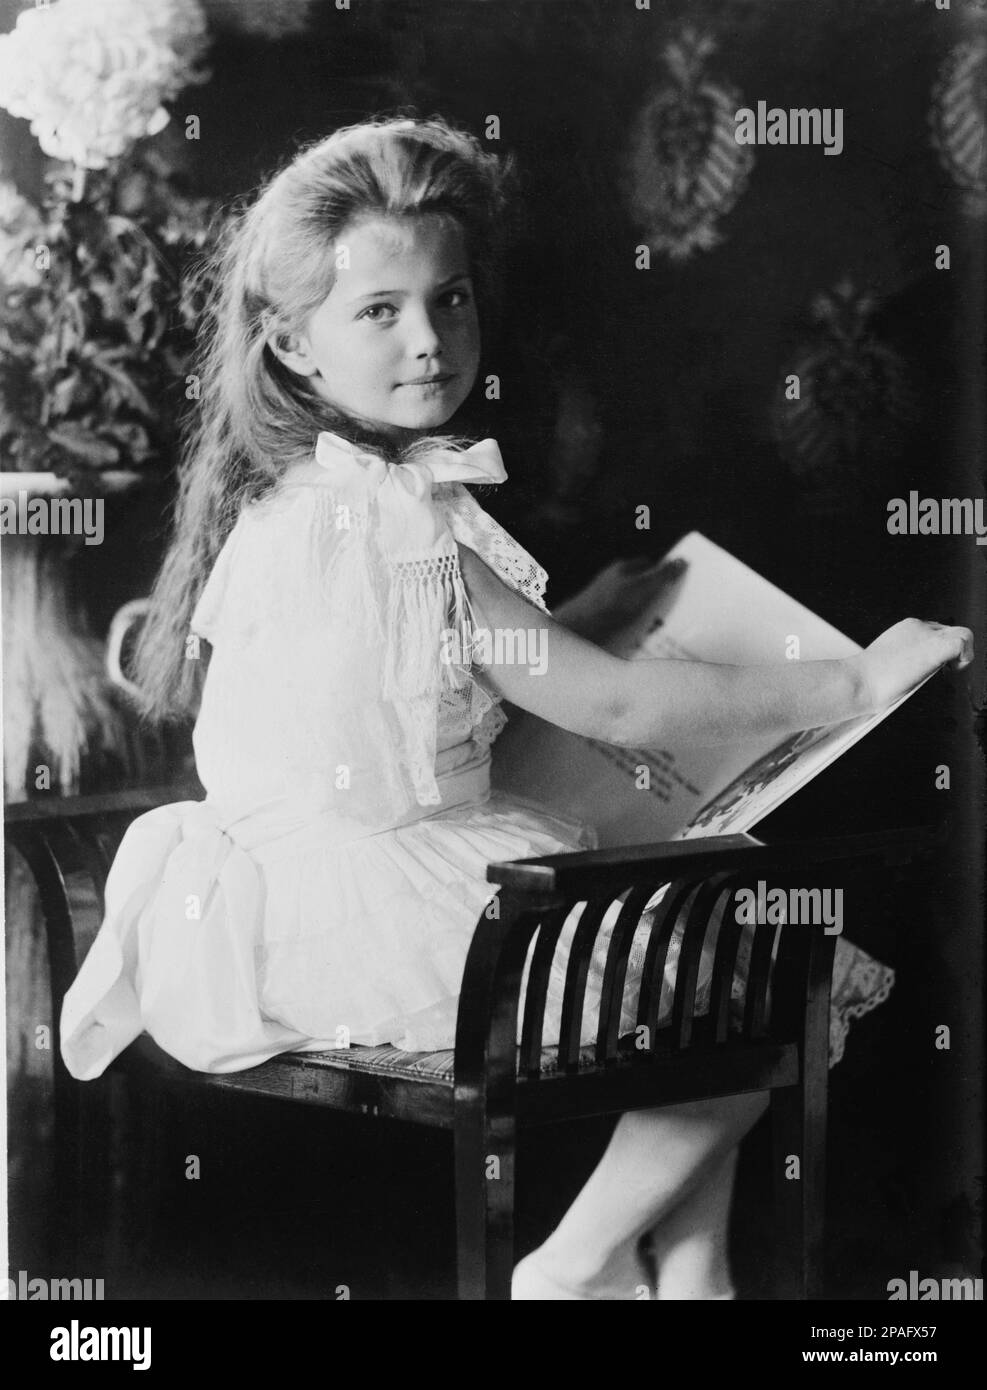 1906 : The russian Grand Duchess MARIE Nikolaevna of Russia ( 1899 - 1918 ), daughter of Tsar Nicholas II ROMANOV of Russia and Alexandra Fyodorovna . Sister of Grand Duke Tsarevich ALEXEI Nikolaevich  (1904 - 1918 ) and  TATIANA , ANASTASIA and OLGA  - foto storiche - foto storica - portrait - ritratto - Nobiltà   - MARIA - nobility - nobili  - nobile - BELLE EPOQUE  - RUSSIA - TZAR - RUSSIA - ROMANOFF - ROMANOV -  bambina - child - children - bambino - bambini  - reader - lettore - lettrice - libro - book  ----      ARCHIVIO GBB Stock Photo